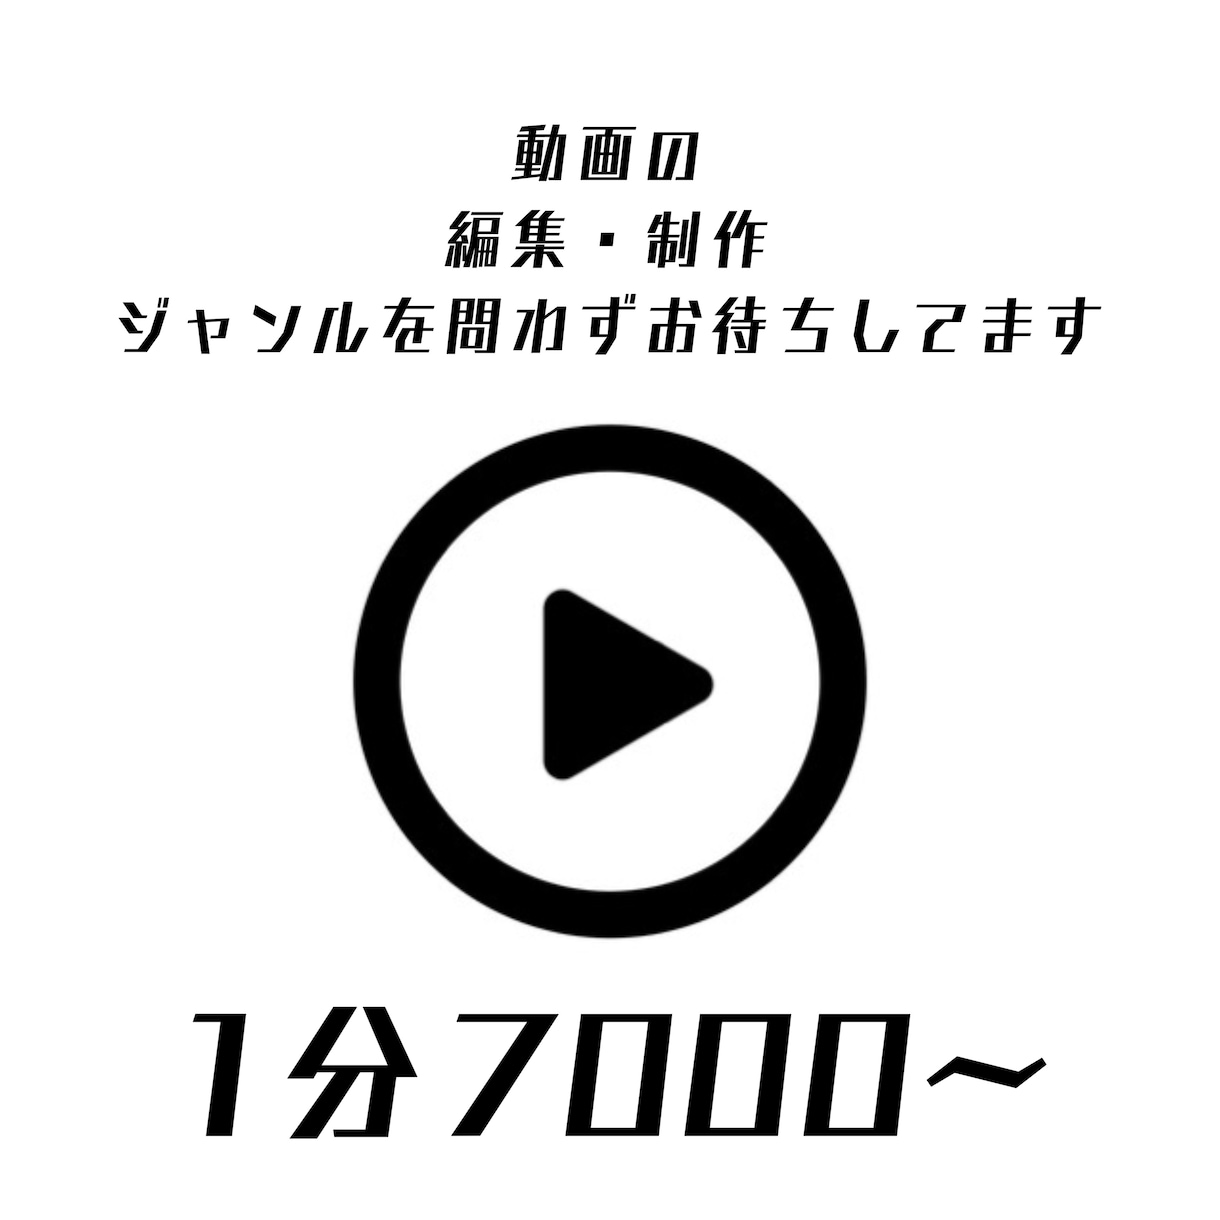 MV.PV.様々な動画編集に対応します YouTubeなどの動画編集　1分7000円からです イメージ1